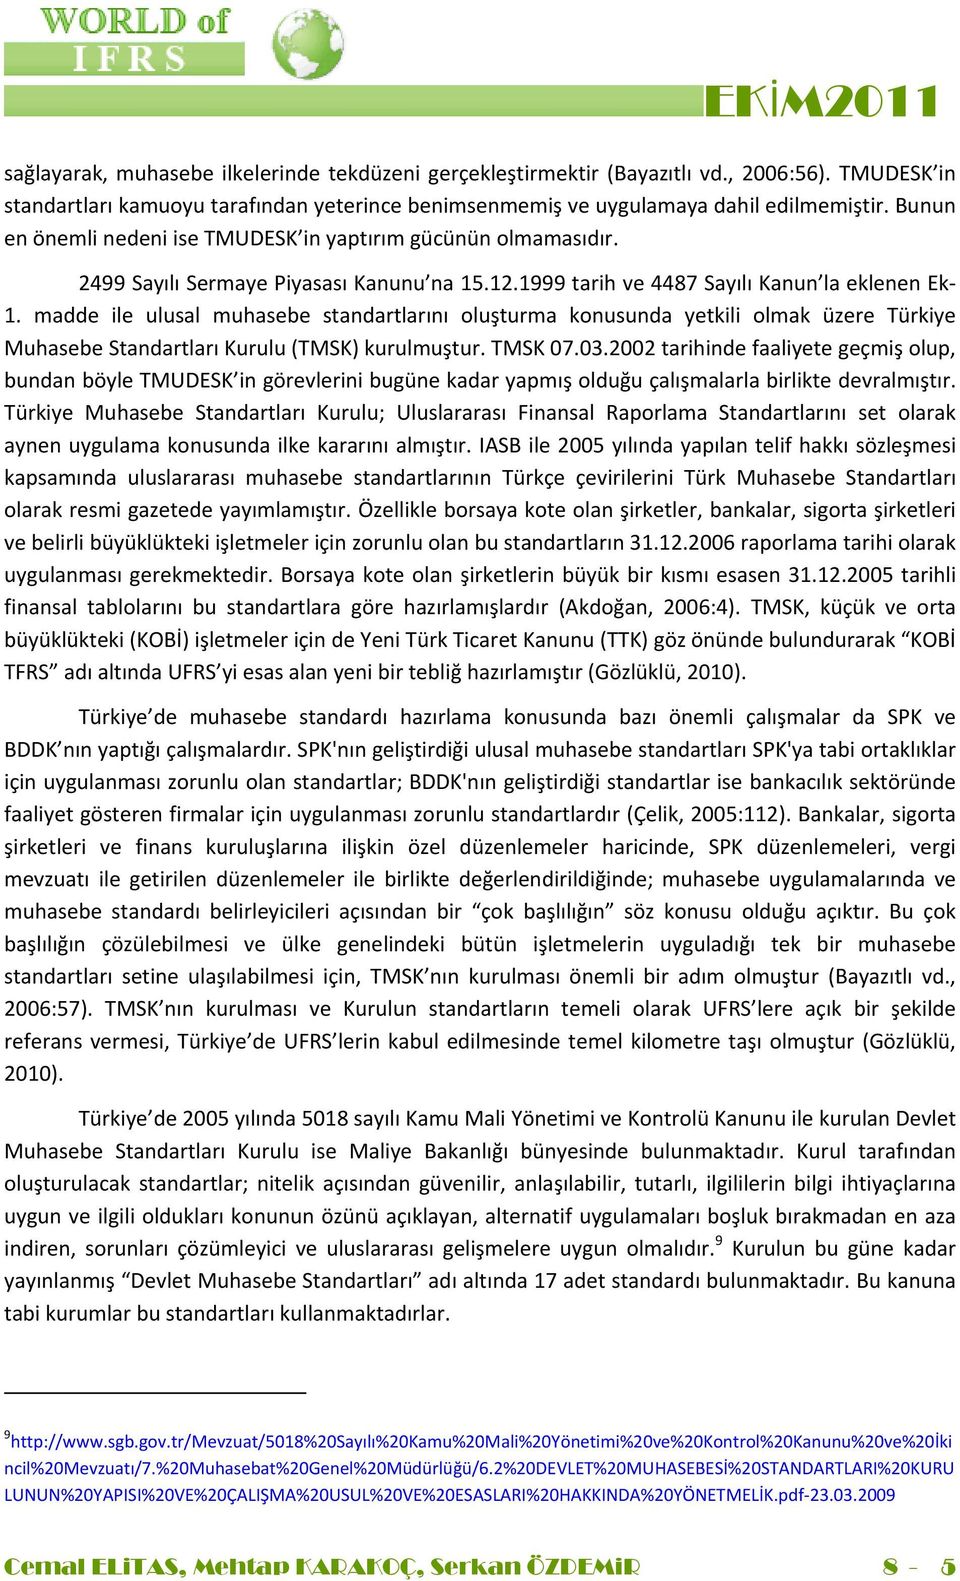 madde ile ulusal muhasebe standartlarını oluşturma konusunda yetkili olmak üzere Türkiye Muhasebe Standartları Kurulu (TMSK) kurulmuştur. TMSK 07.03.